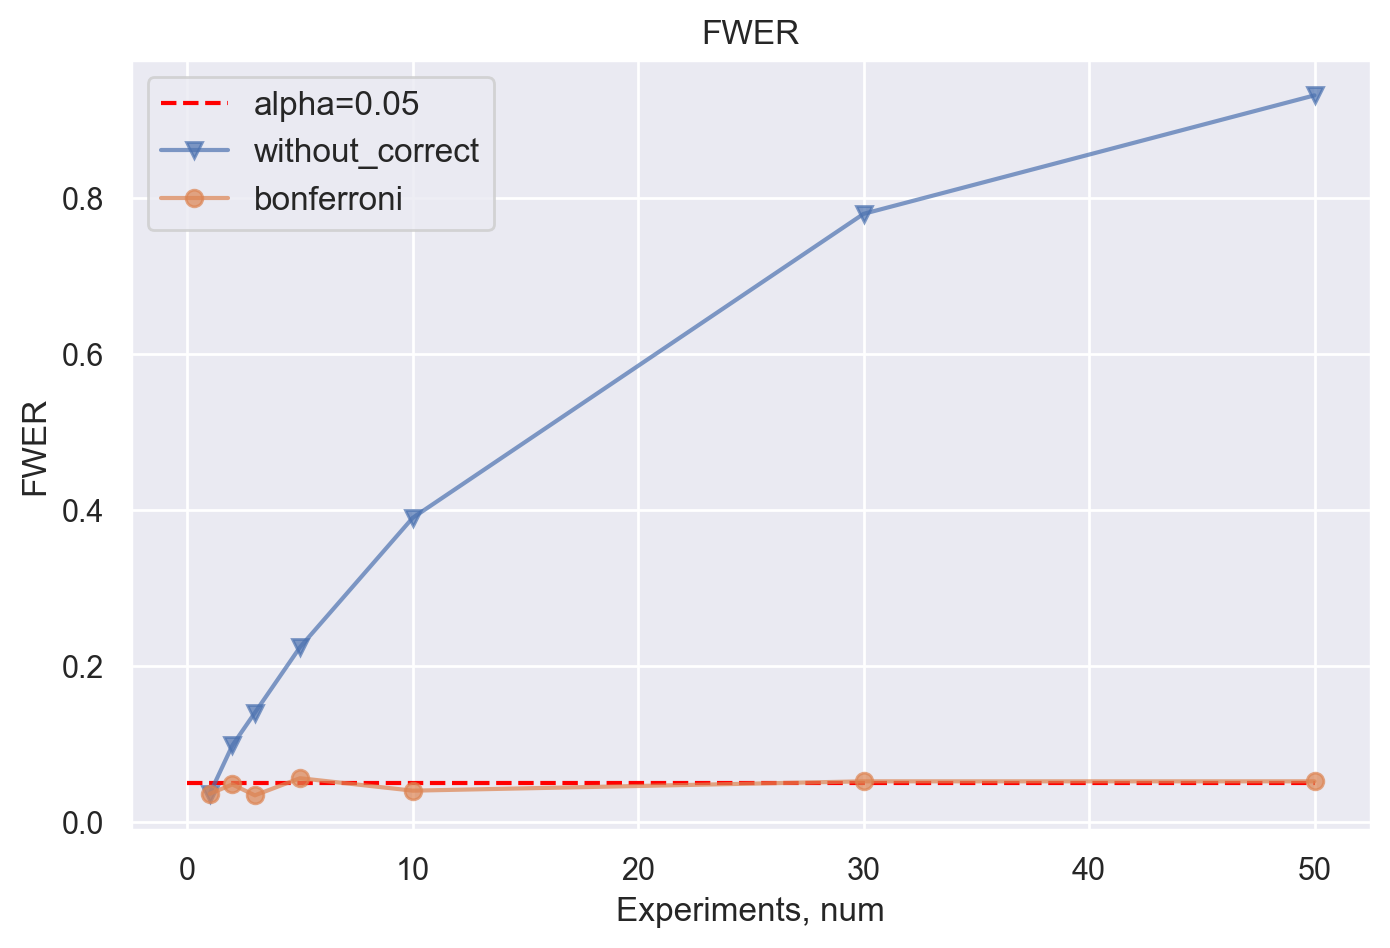 Контроль FWER методом Бонферрони в зависимости от числа гипотез